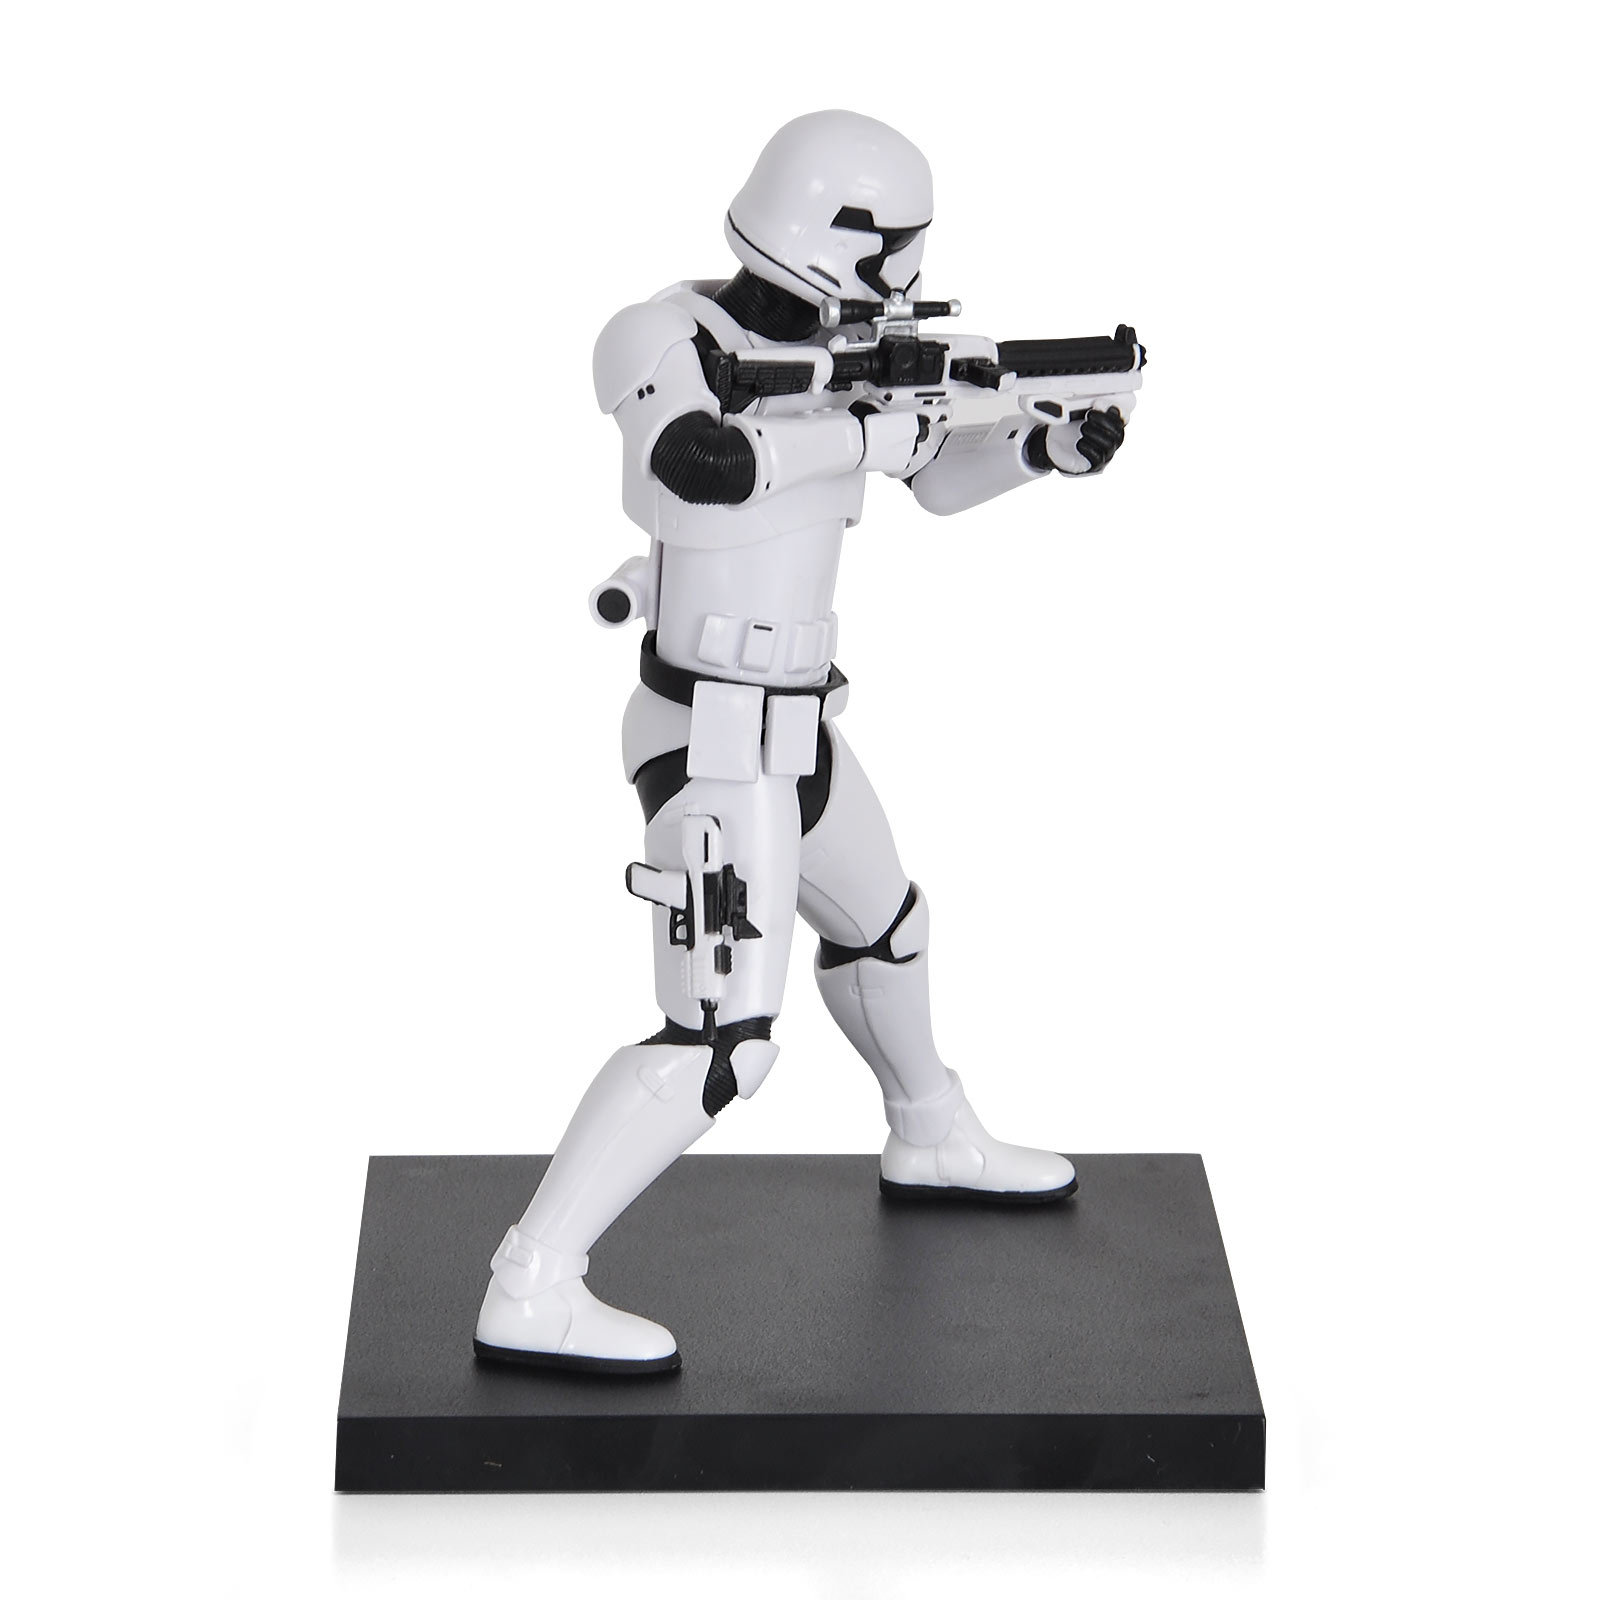 Star Wars - First Order Stormtrooper Figures Set